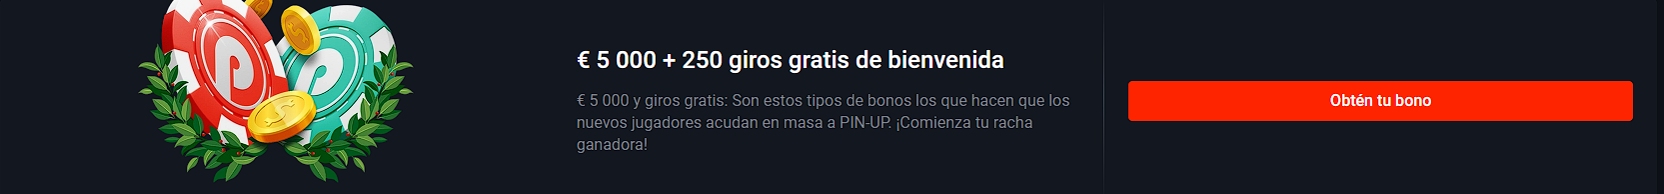 Pin Up Casino Perú - bono de bienvenida al registrarse